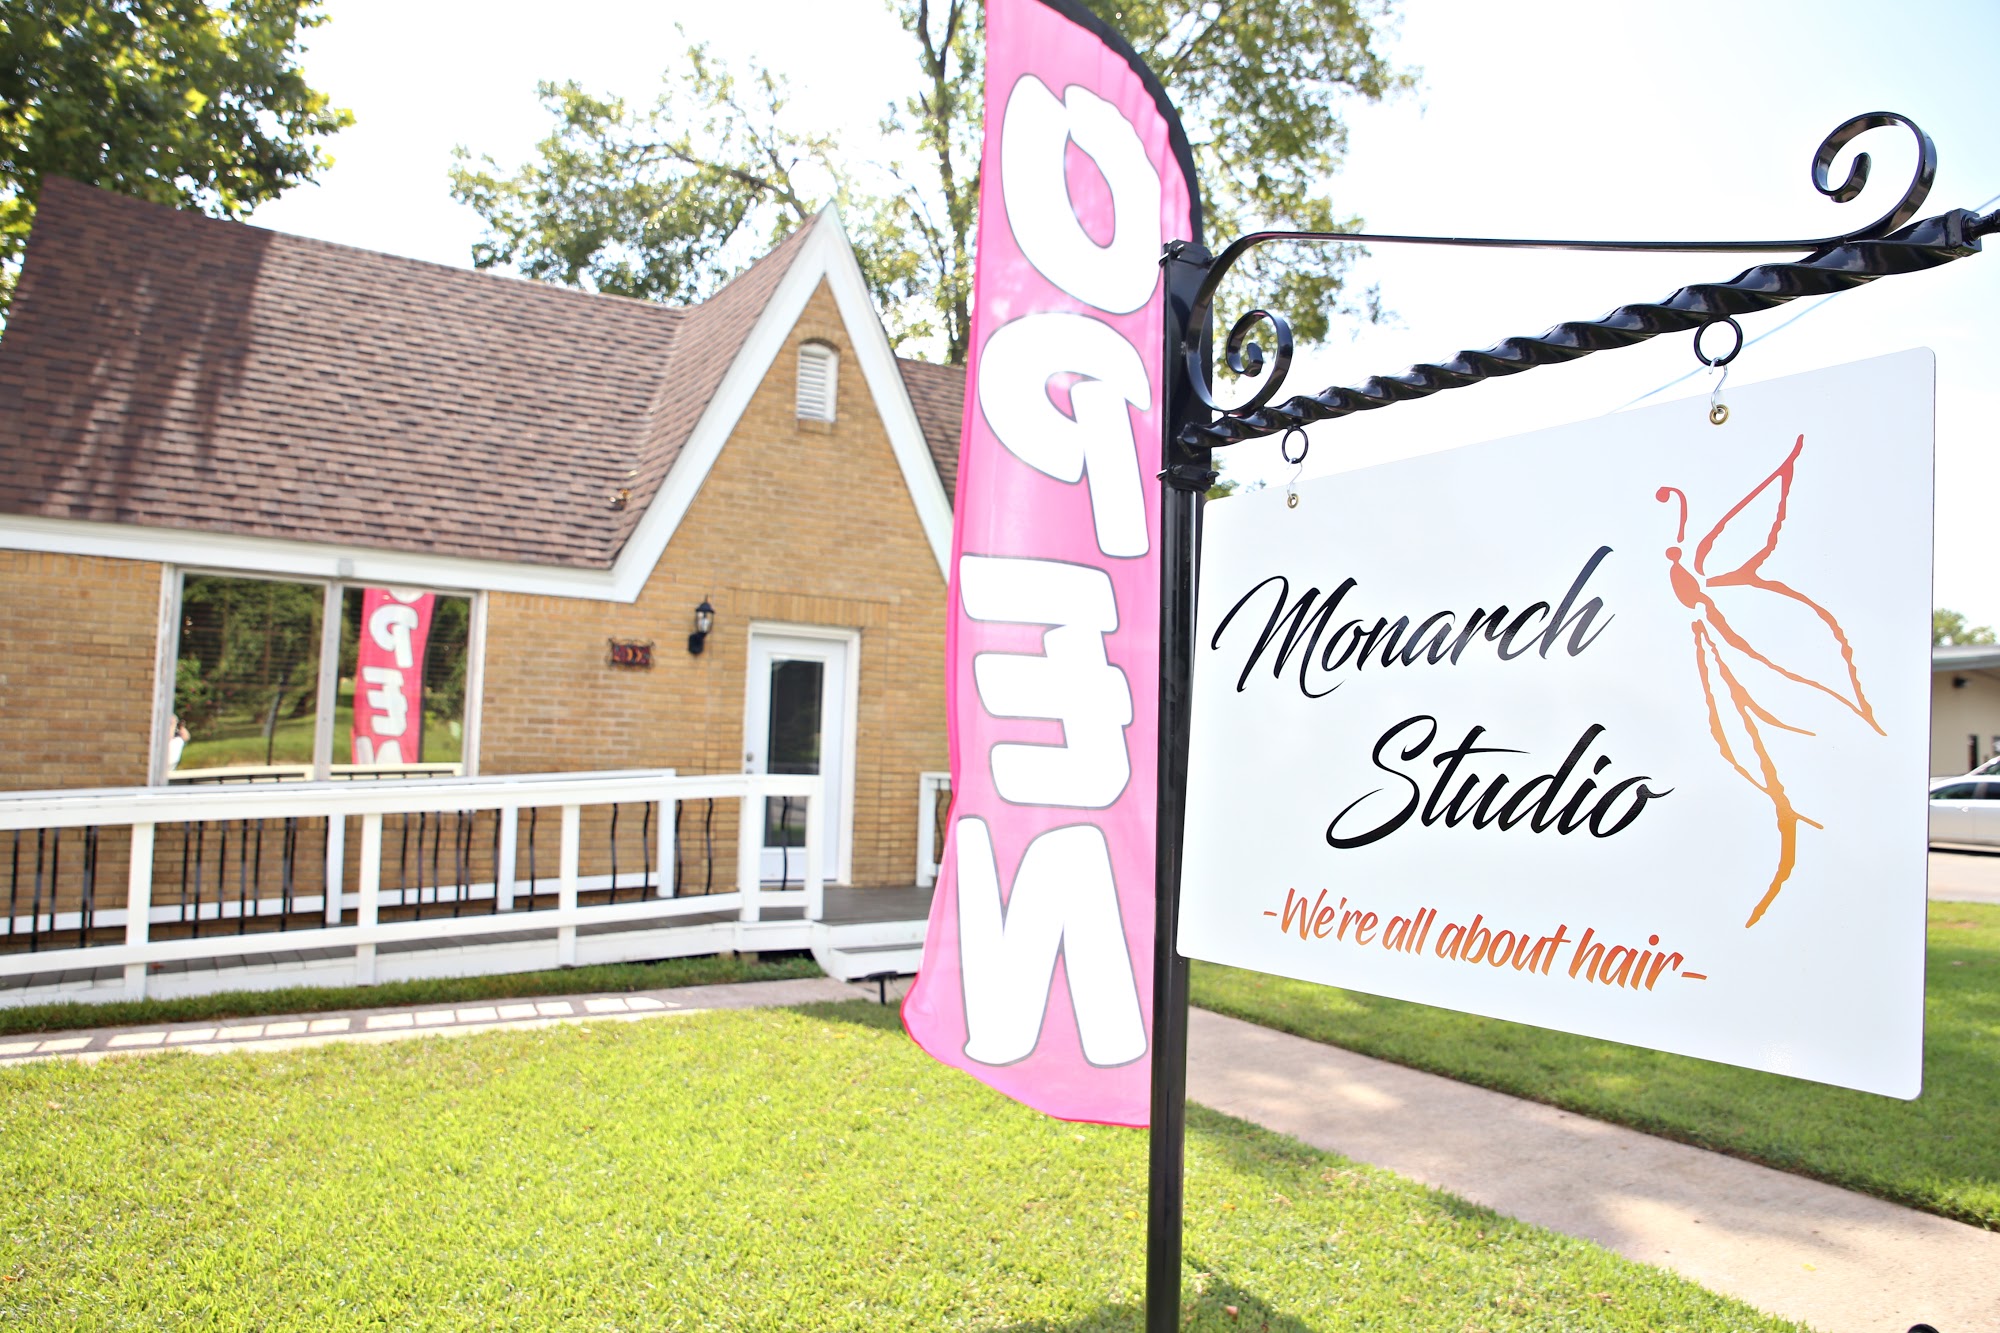 Monarch Studio